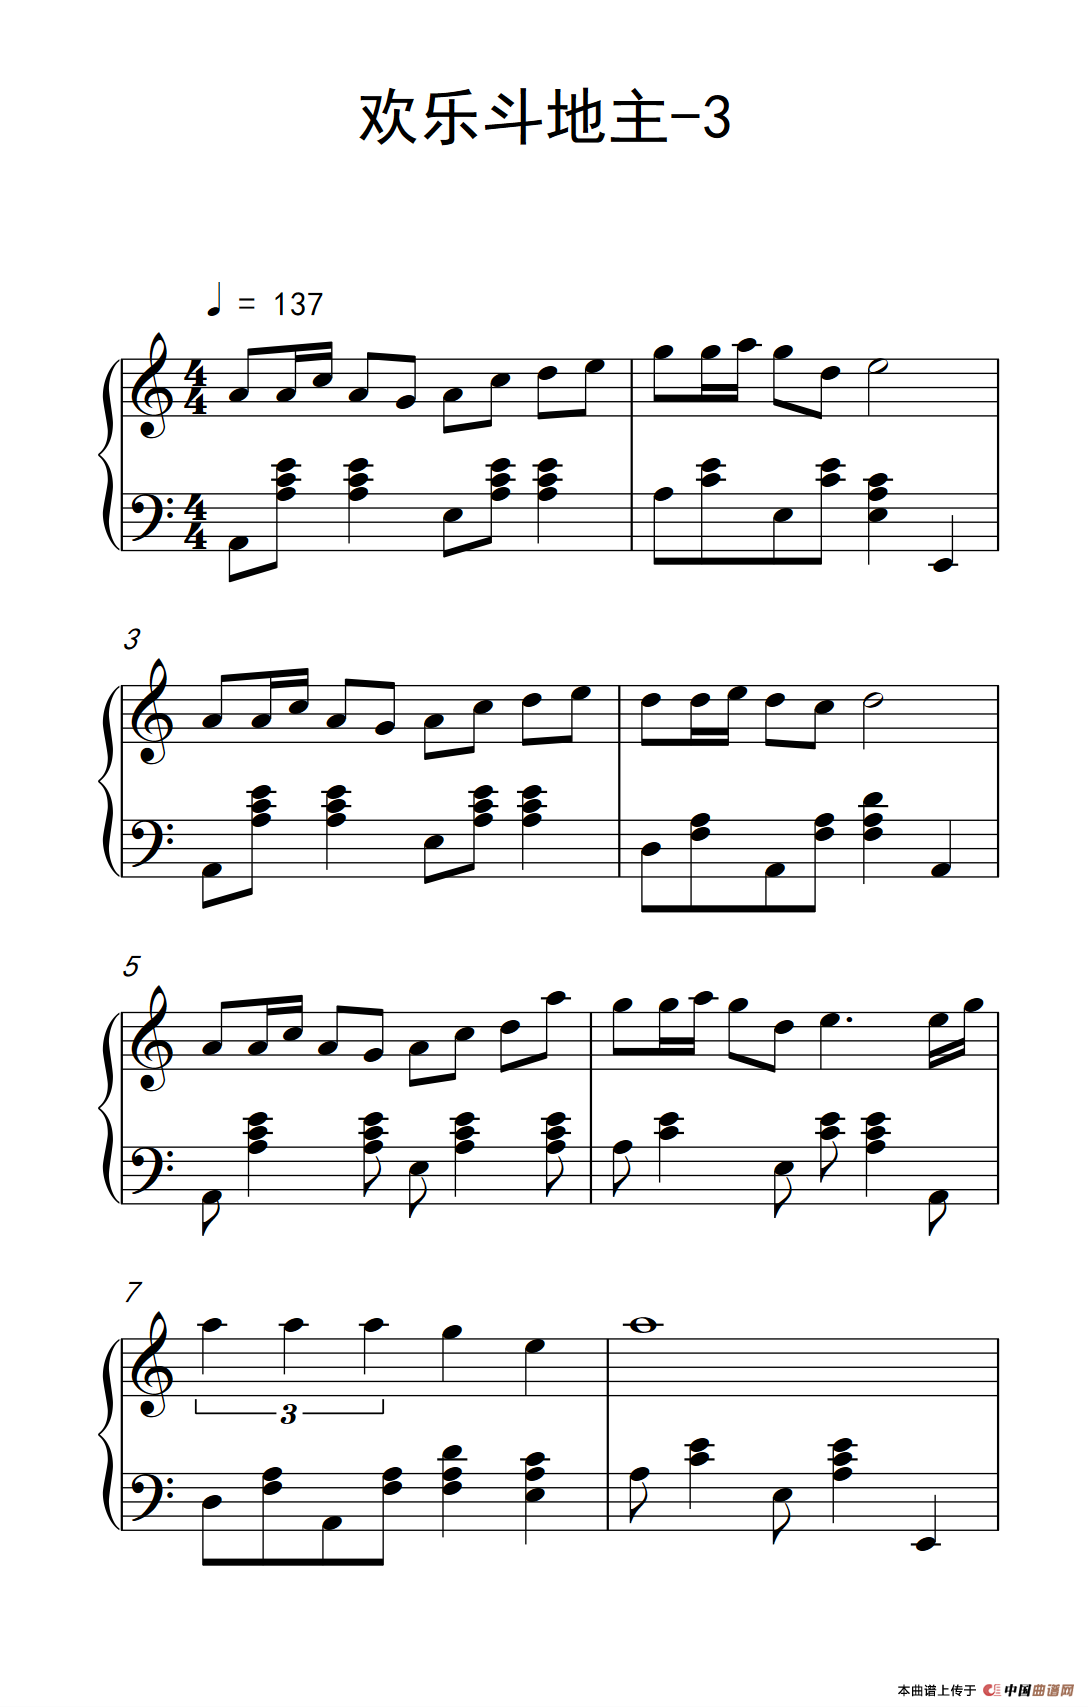 《欢乐斗地主-3》钢琴曲谱图分享